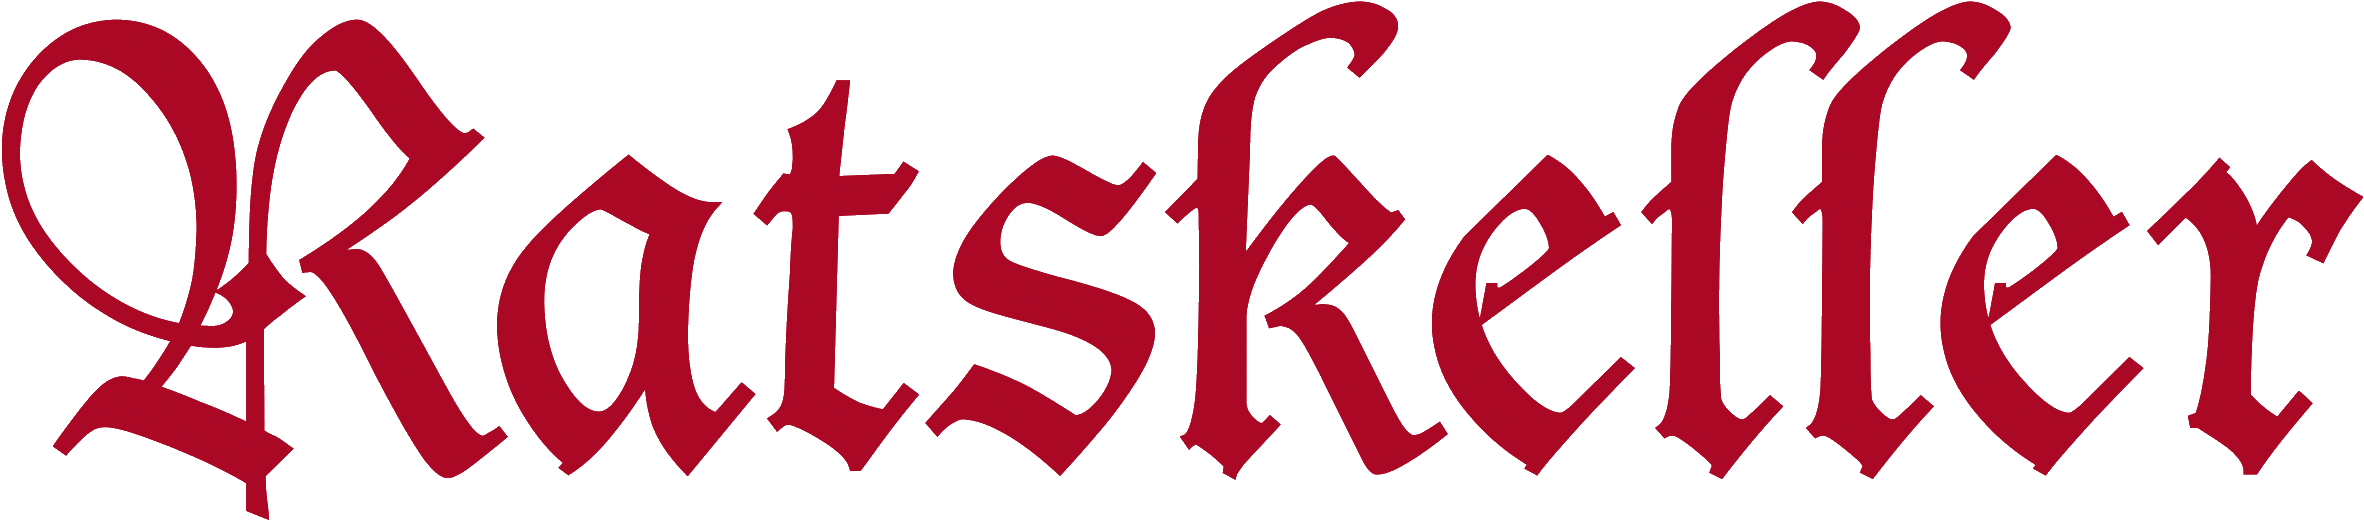 Ratskeller Logo Min